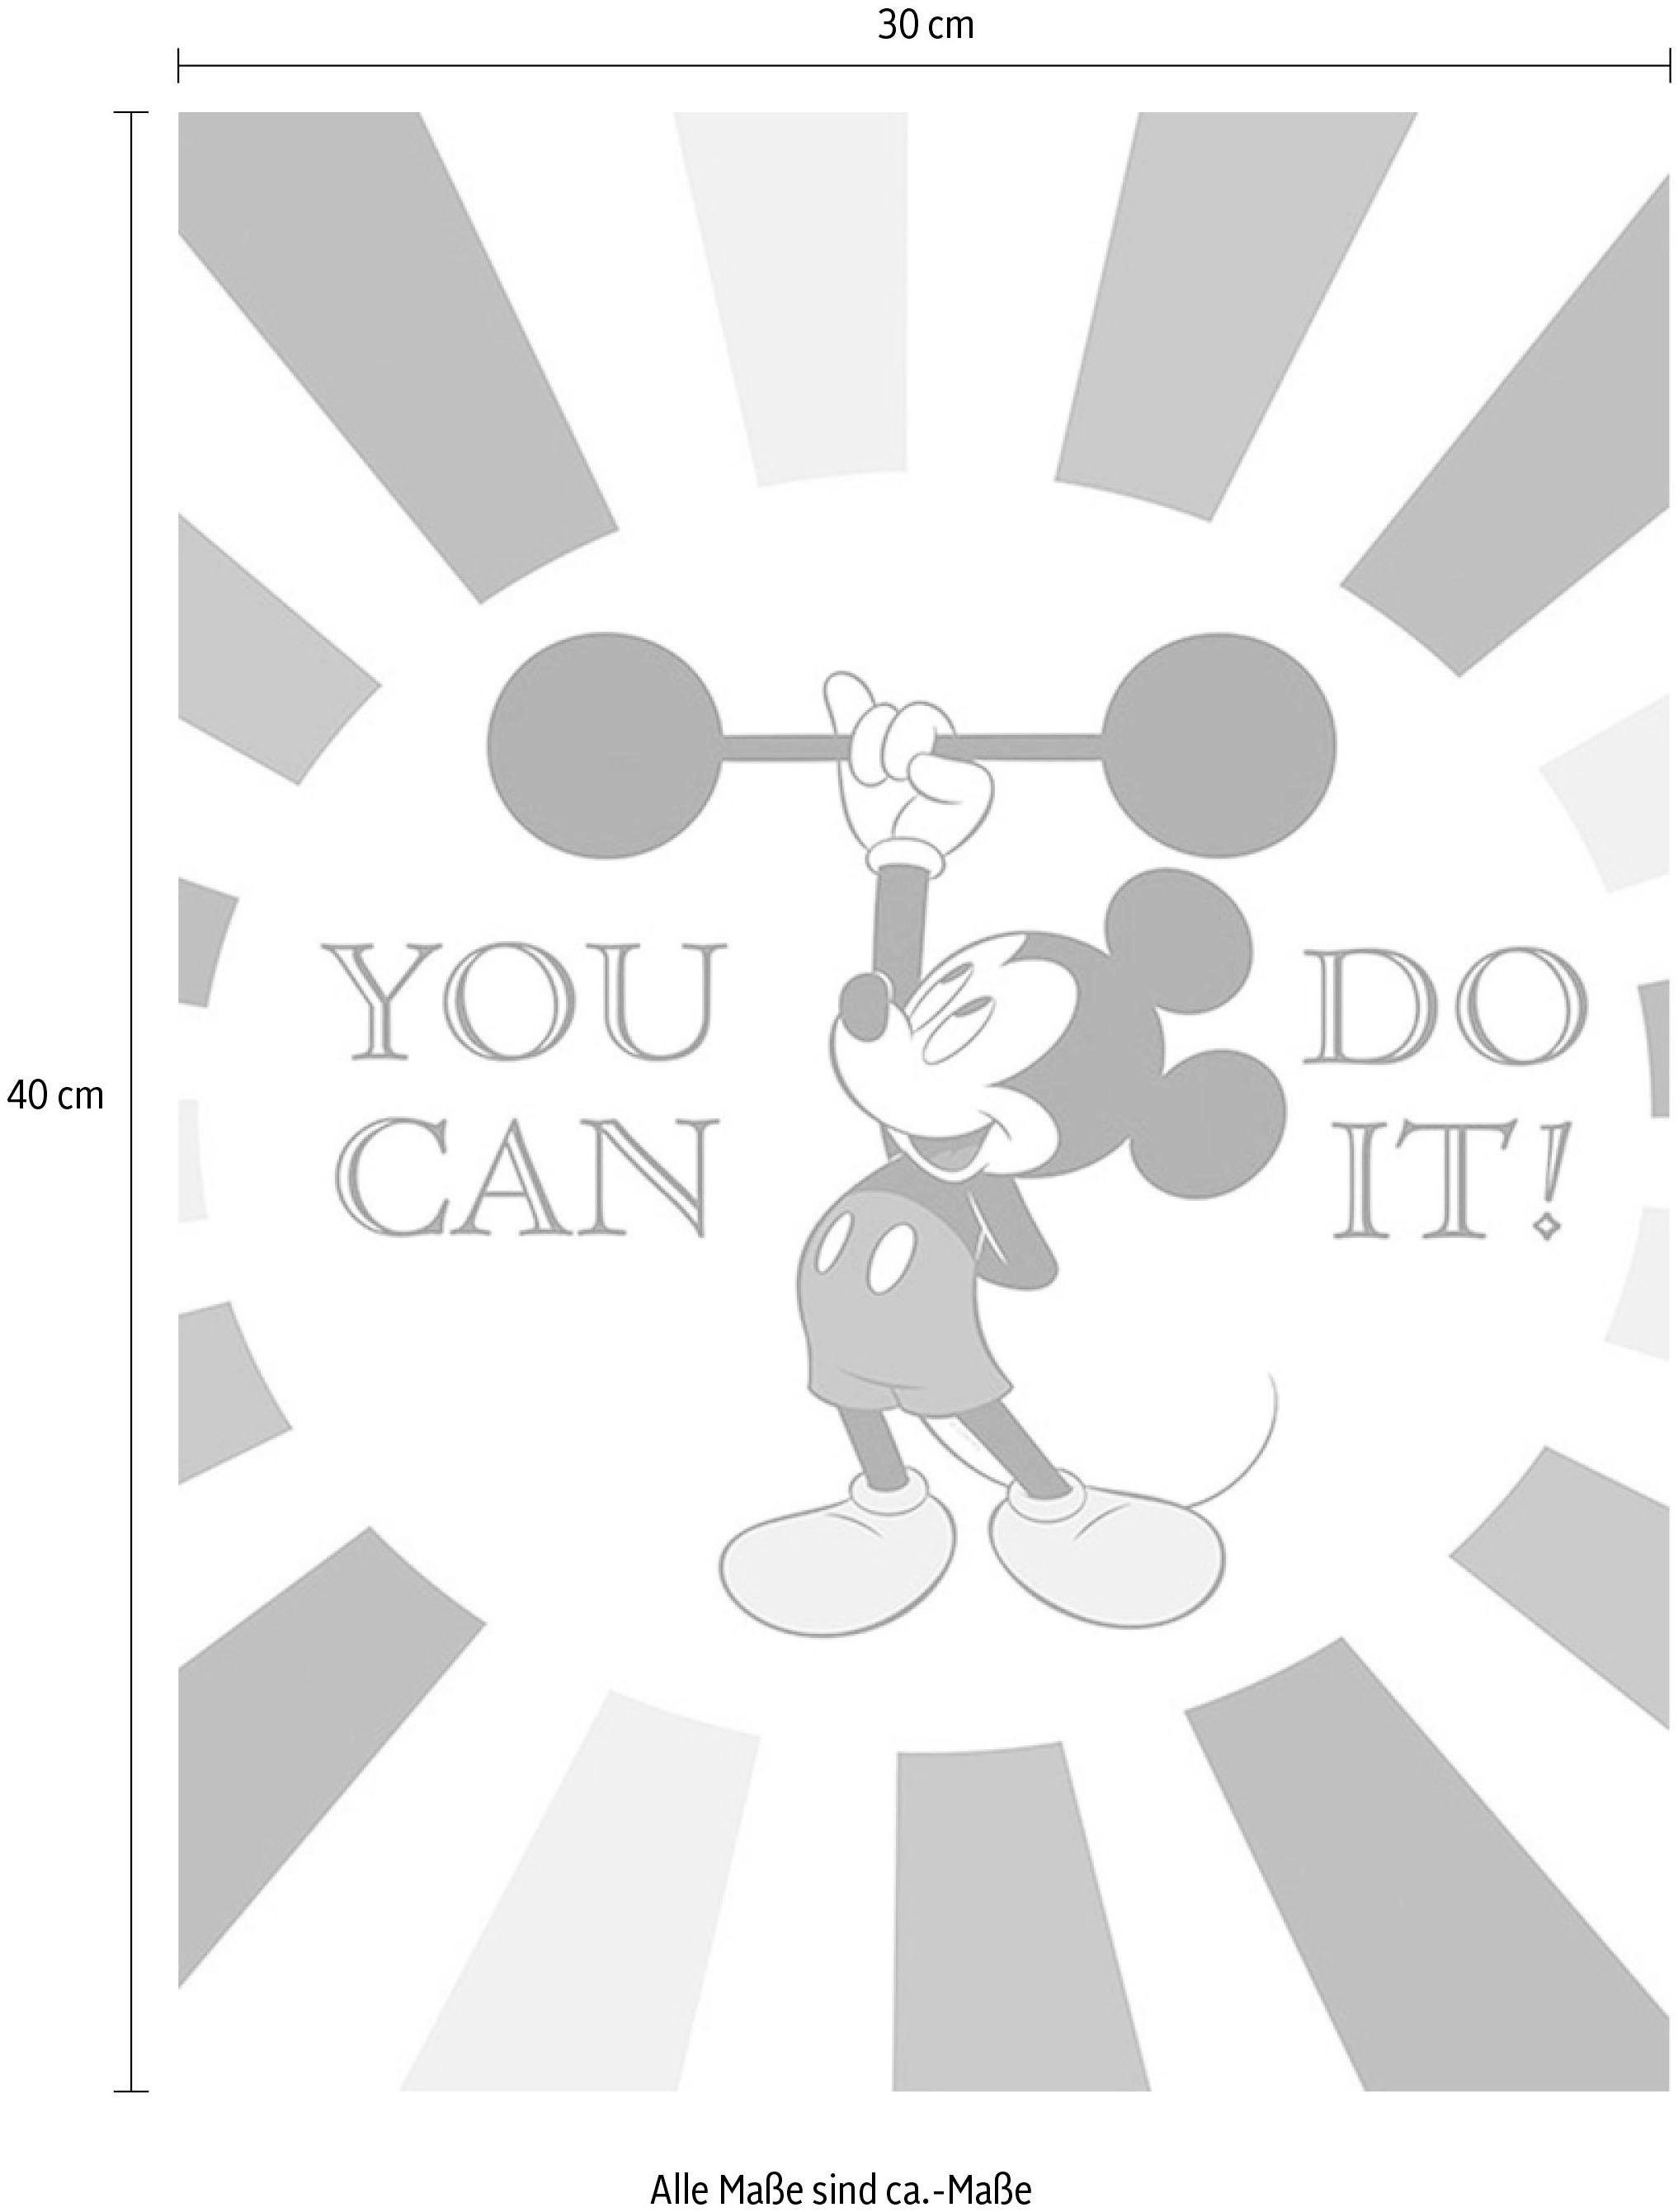 Komar Poster »Mickey Mouse Do it«, Disney, (1 St.), Kinderzimmer, Schlafzimmer, Wohnzimmer